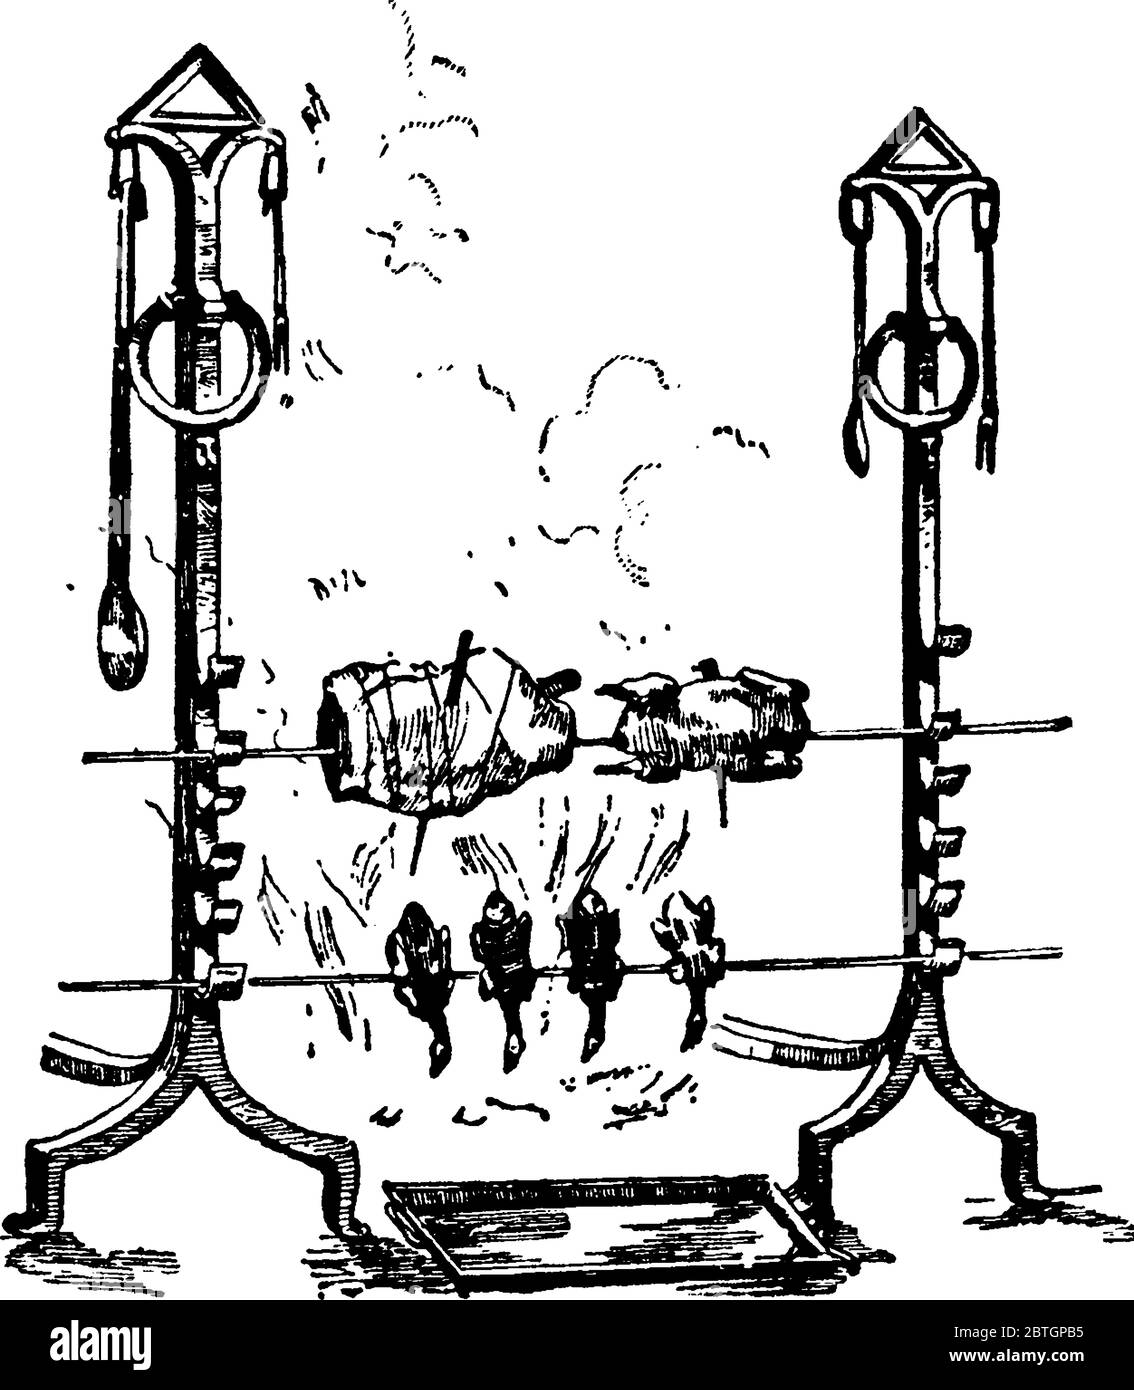 c'est une image de fer rack, autrefois utilisé, sur lequel une broche a été accrochée avant un feu, la viande étant cuite sur un feu, la méthode de rôtissage de la cuisson est s. Illustration de Vecteur